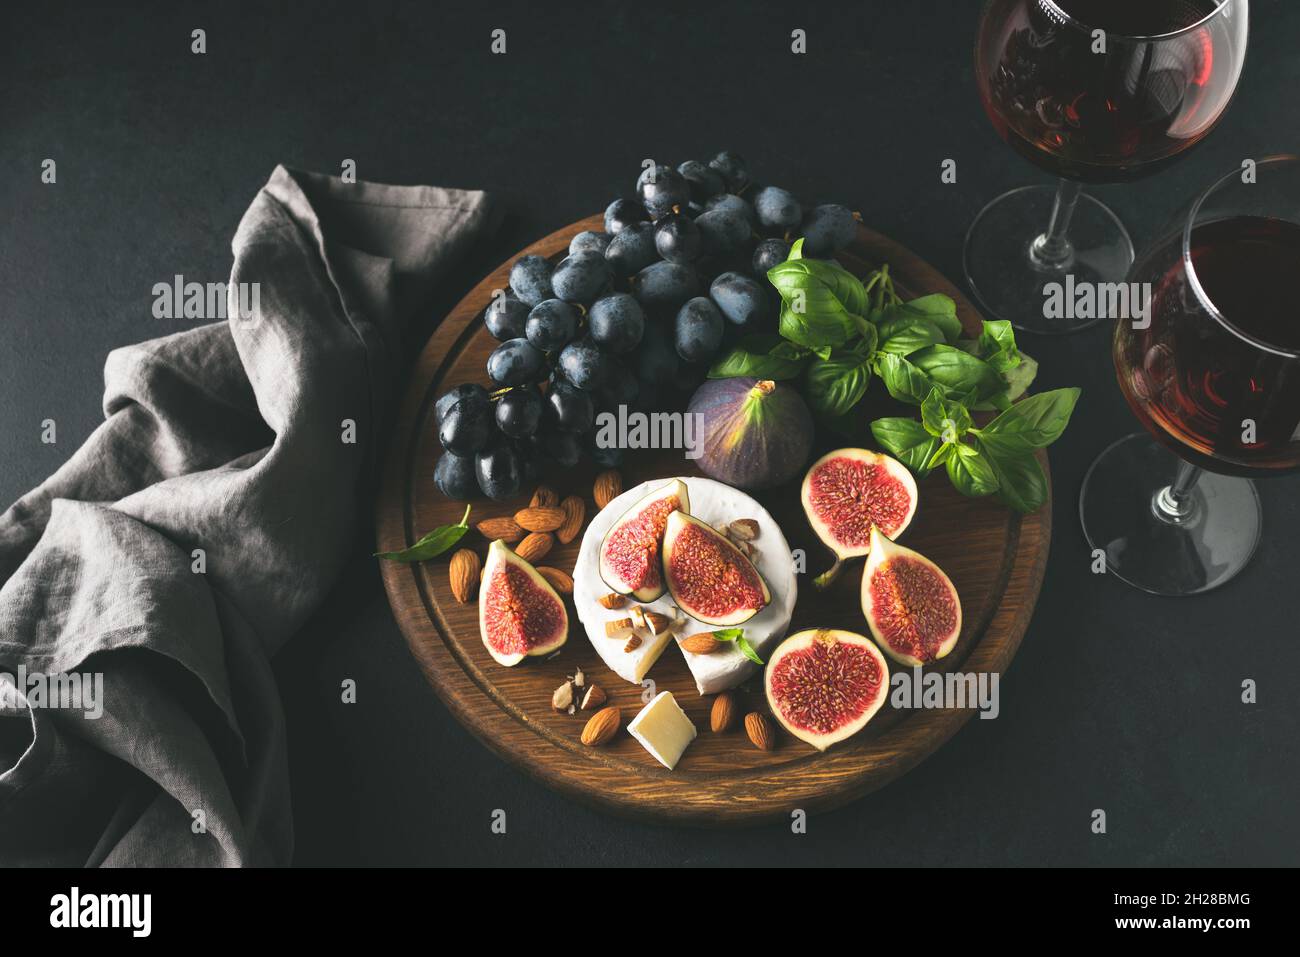 Formaggio bianco brie o camembert con fichi e uva su tavola di legno, servito con un bicchiere di vino. Immagine in tonalità della vista dall'alto. Set di antipasti a base di formaggio e vino Foto Stock